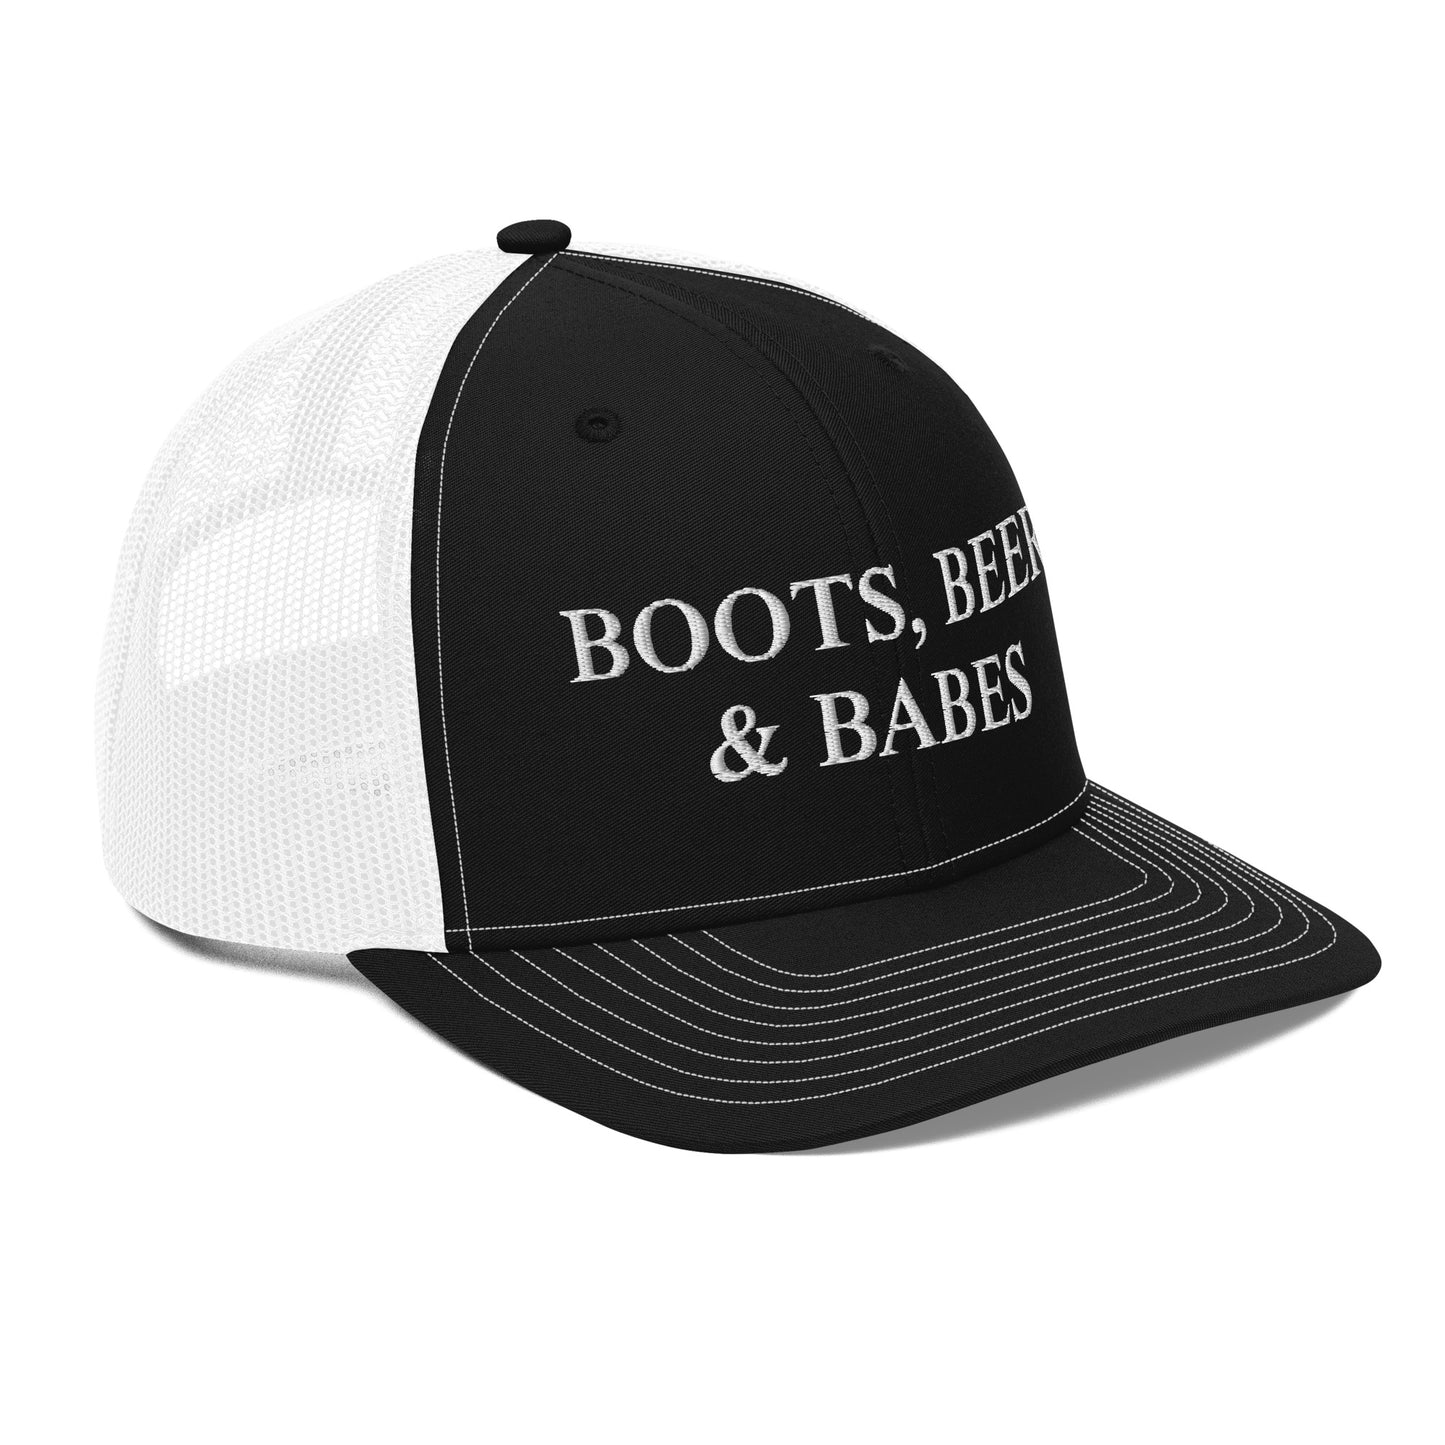 Boots, Beer & Babes Trucker Cap